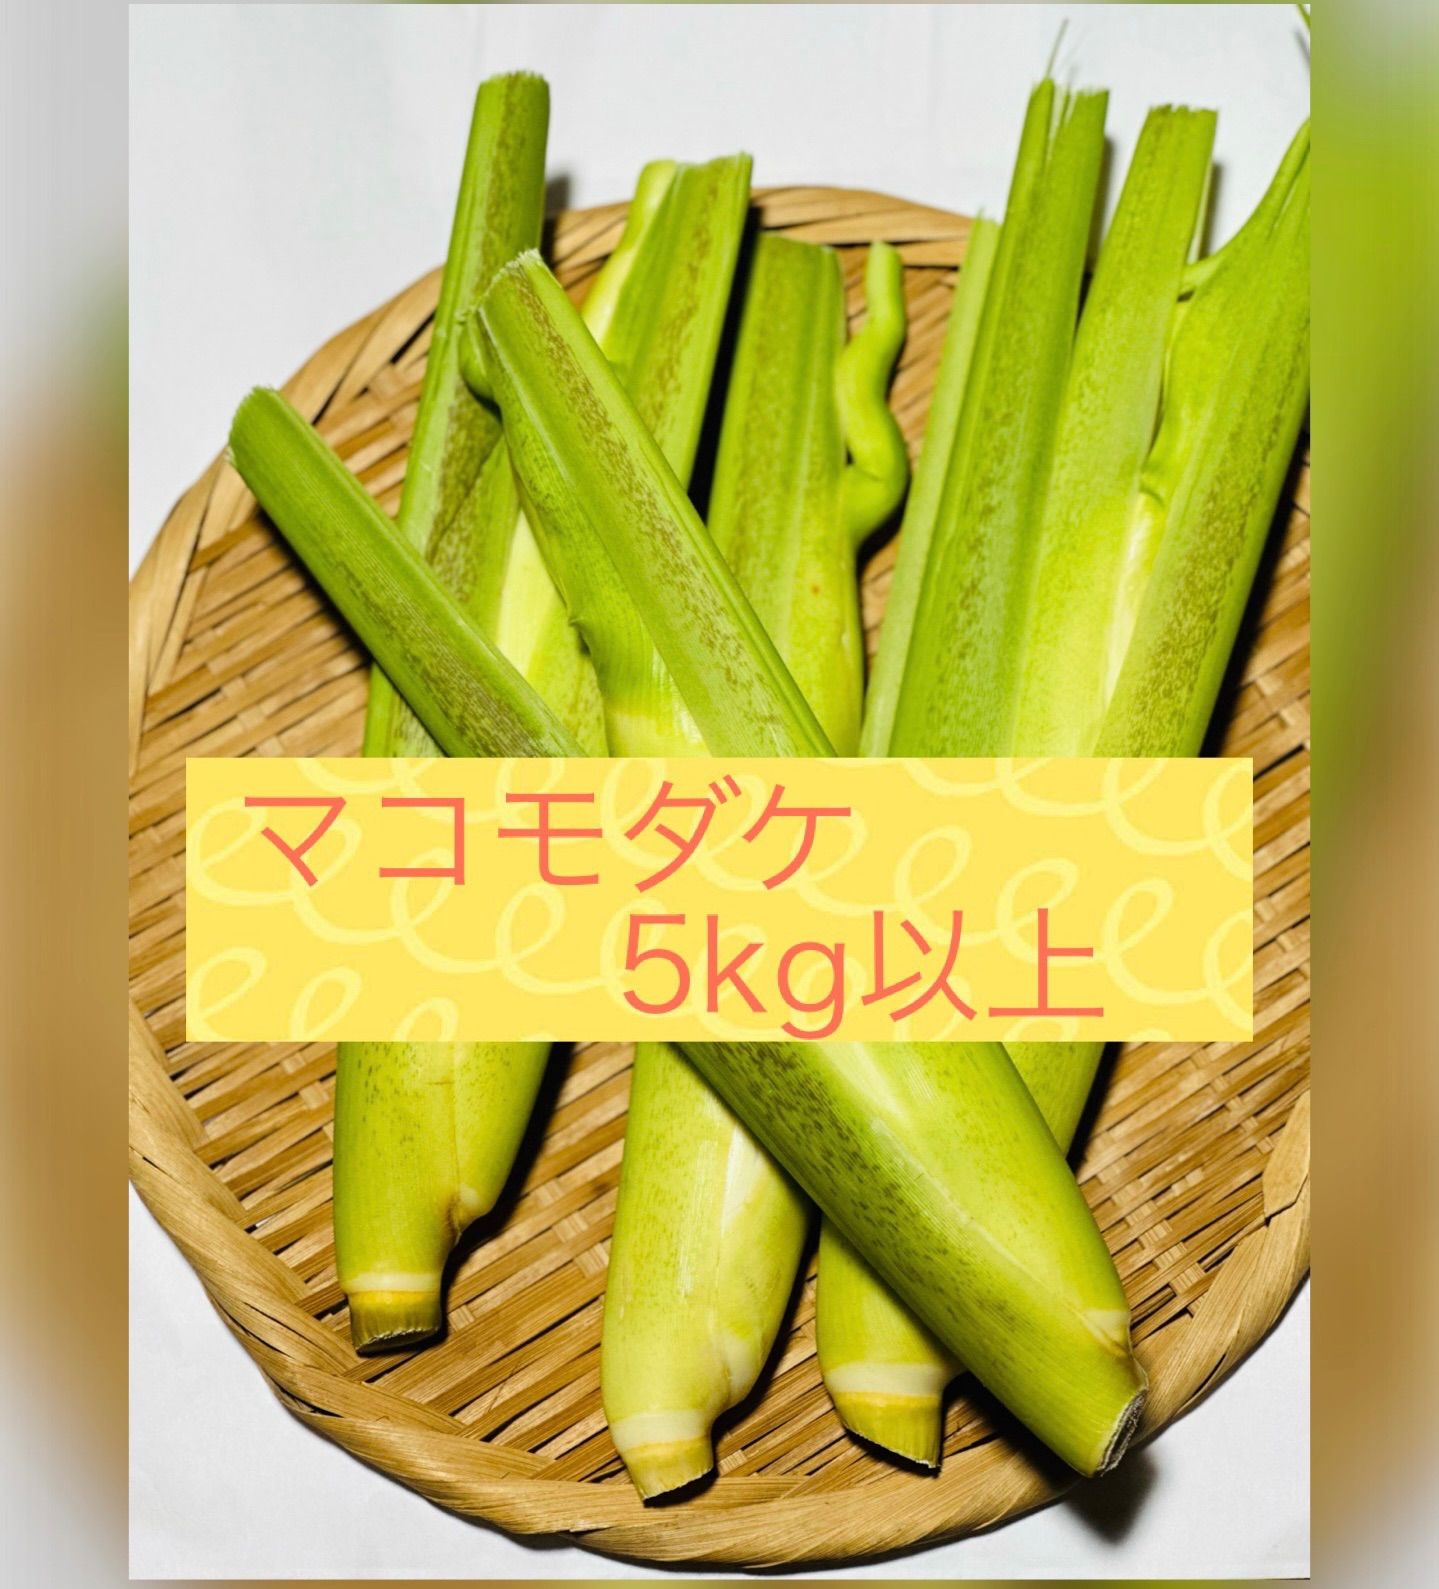 京いも種子 竹のこ里芋の種子 10kg - ダイエットフード